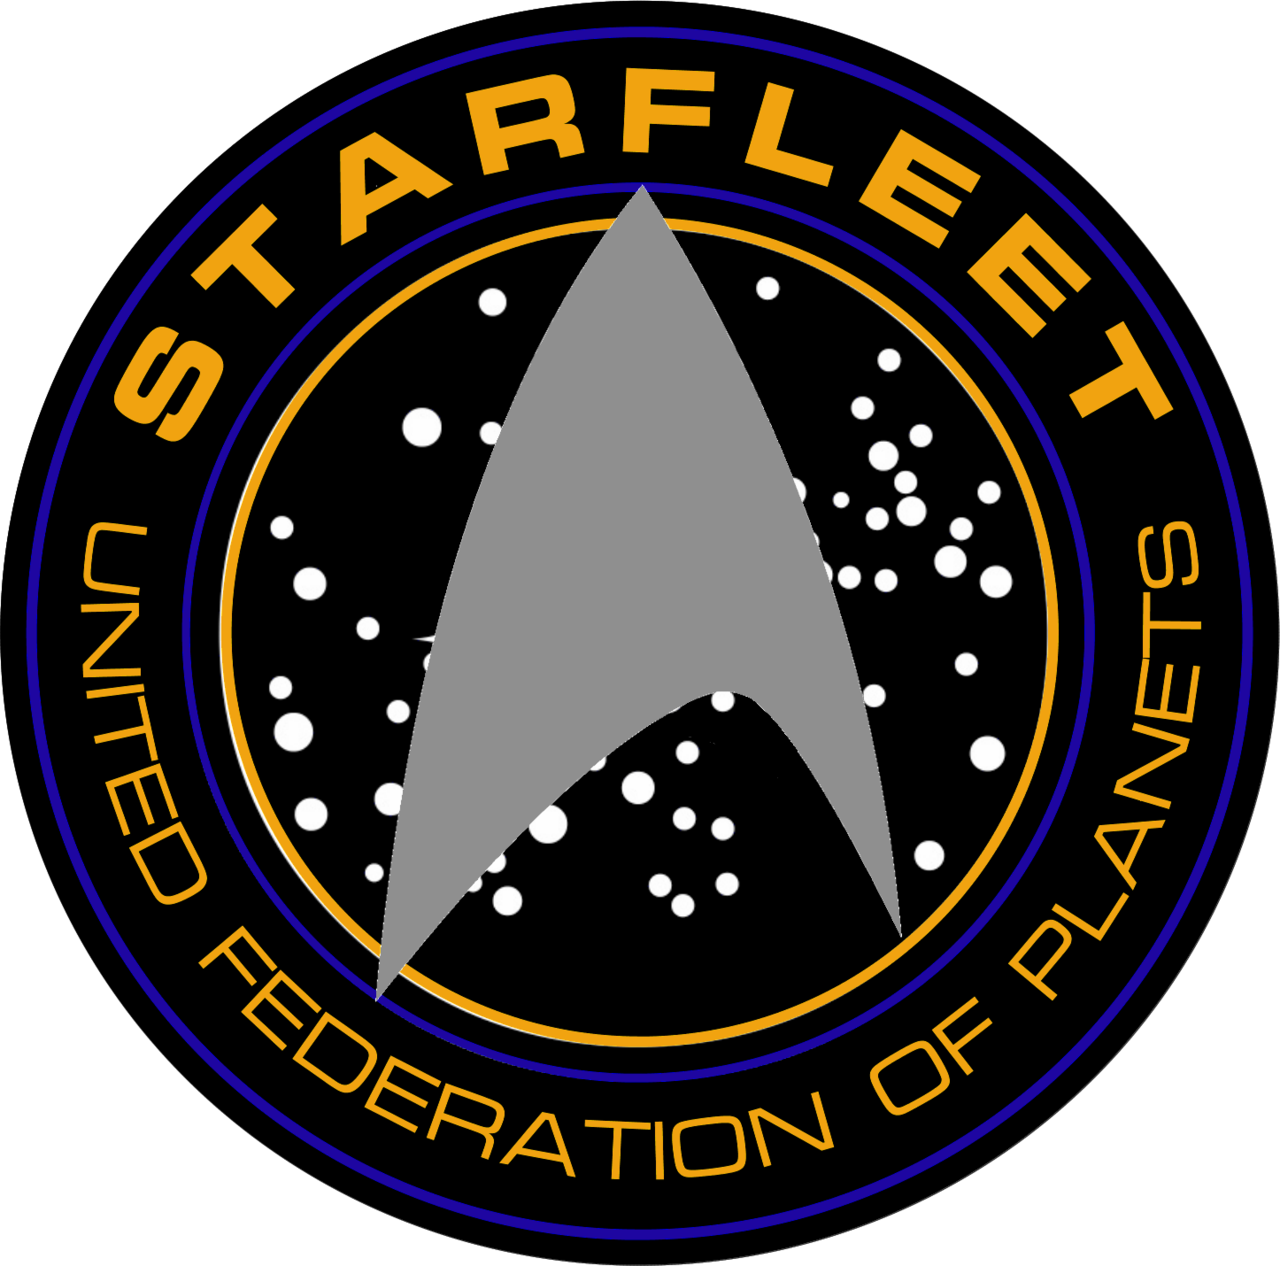 star trek logo images